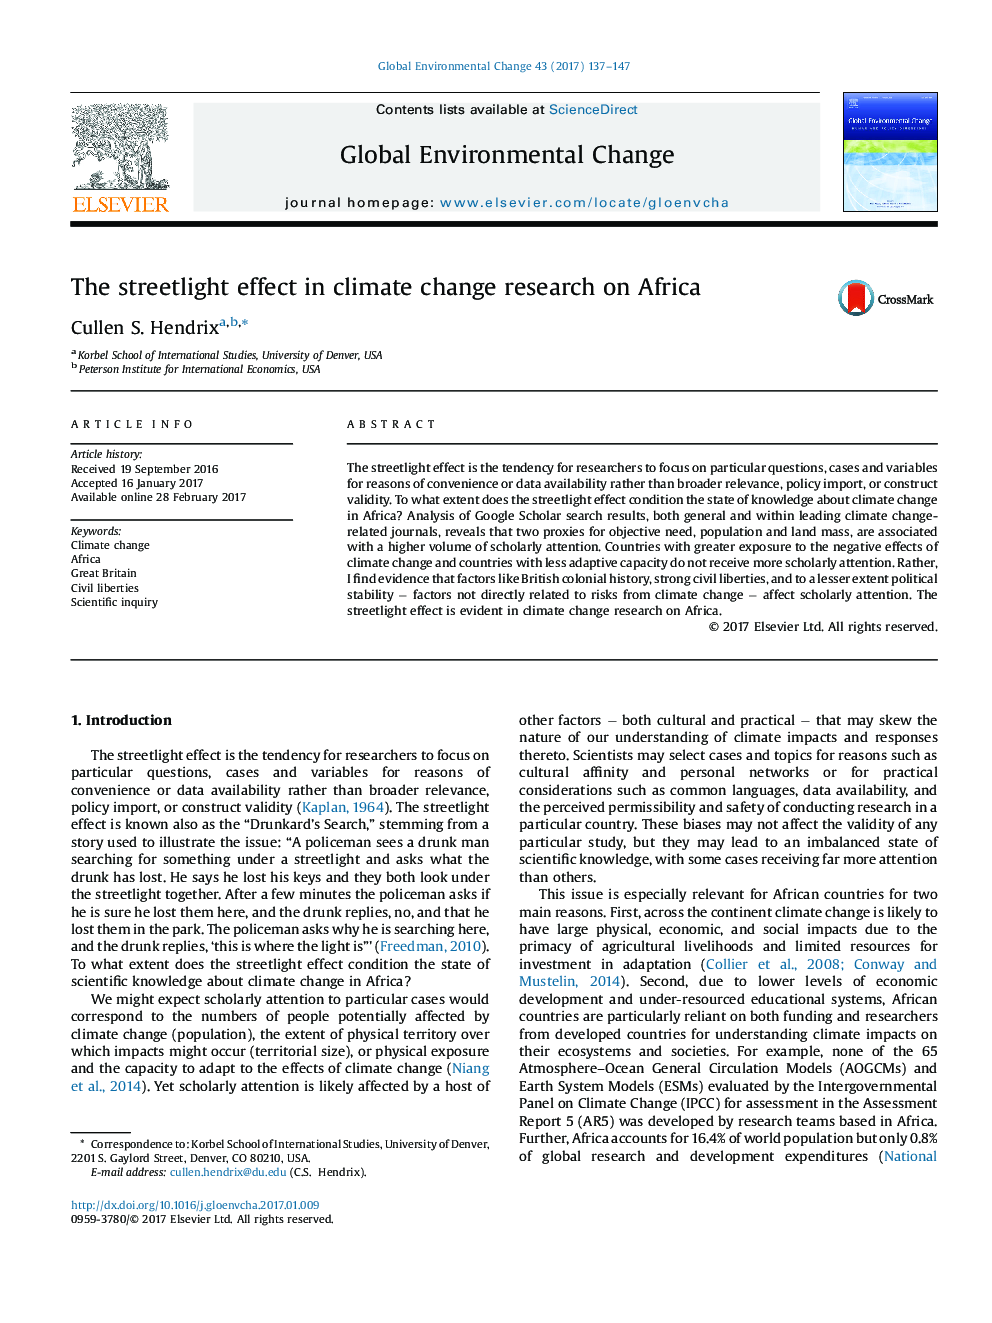 اثرات خیابانی در تحقیقات تغییر آب و هوا در آفریقا 